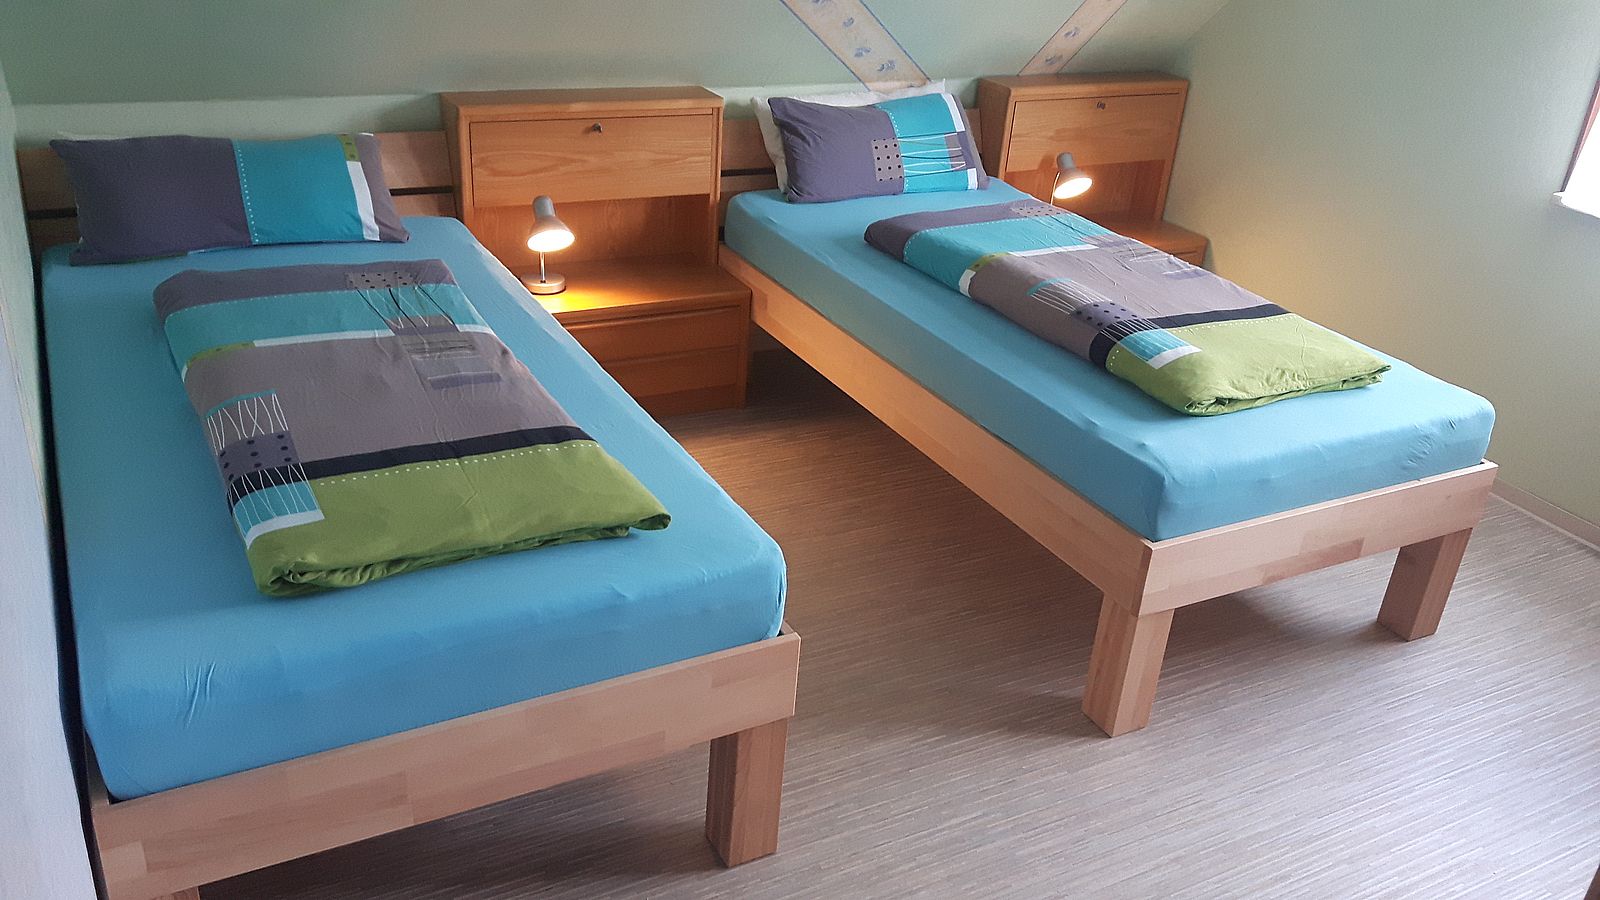 Schlafzimmer groß: Betten in Ferienwohnung Sachsenheim-Hohenhaslach (Bild 1)